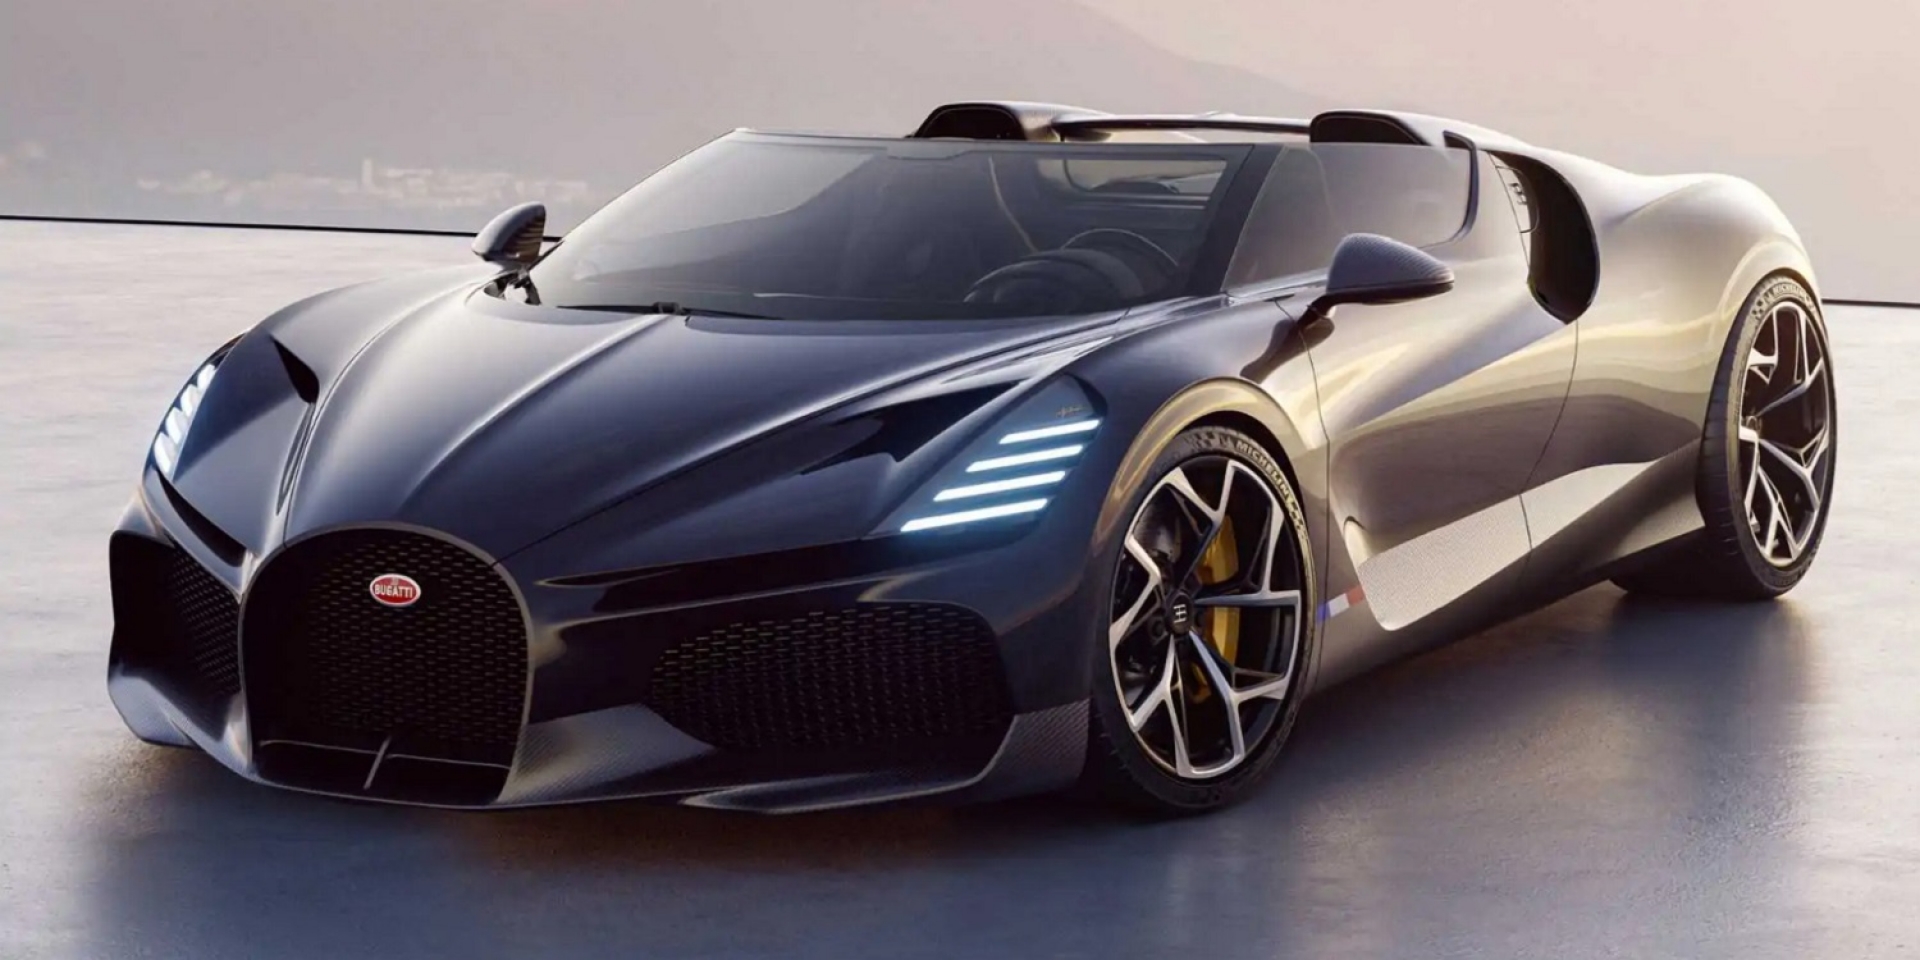 力求品牌初衷與銷售目標平衡！Bugatti設計總監接受採訪表示「目前沒有生產SUV車型計畫」